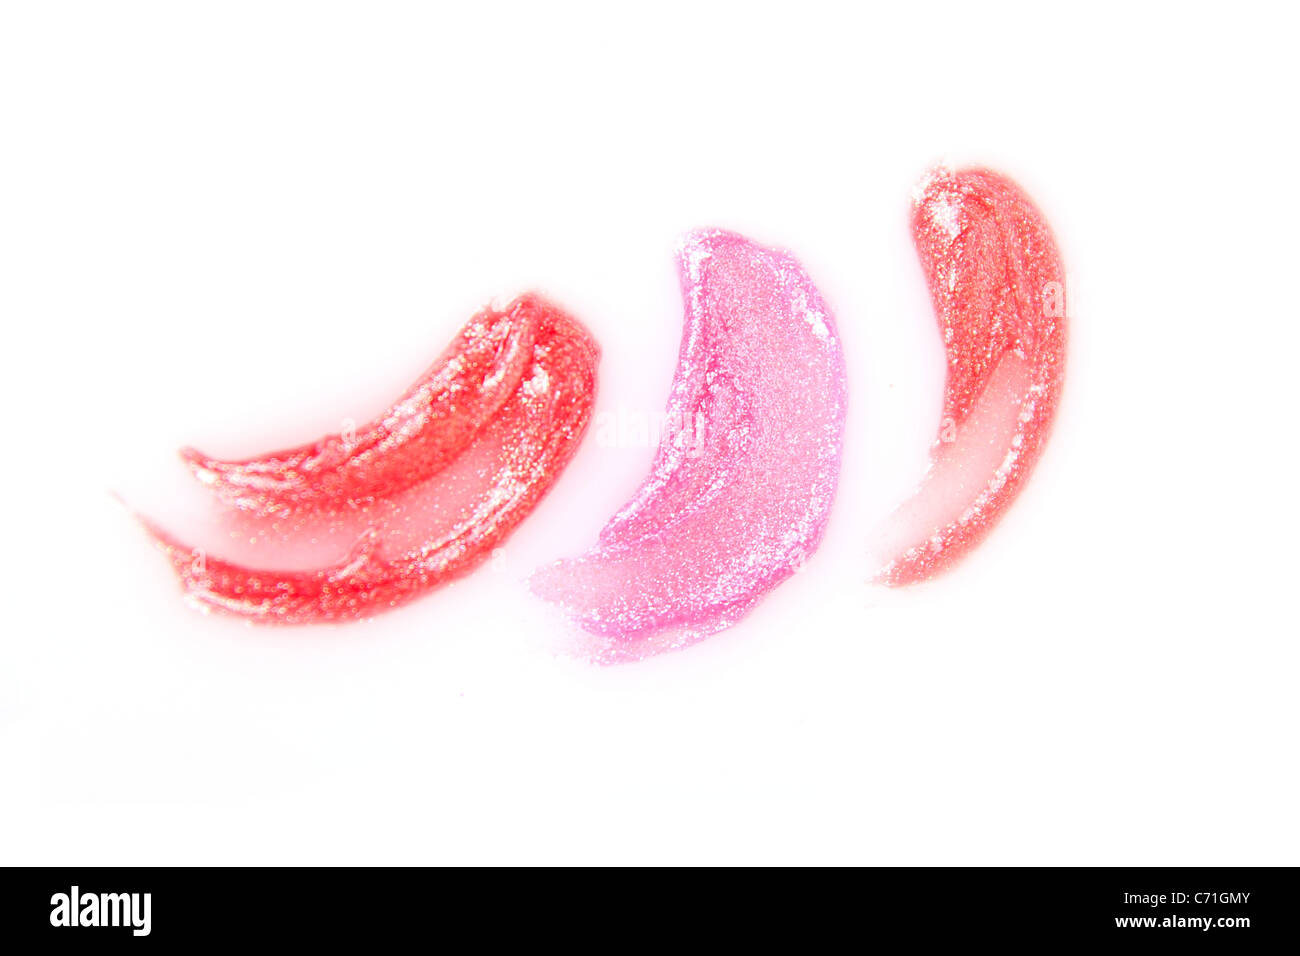 Des échantillons de rouge à lèvres isolated on white Banque D'Images